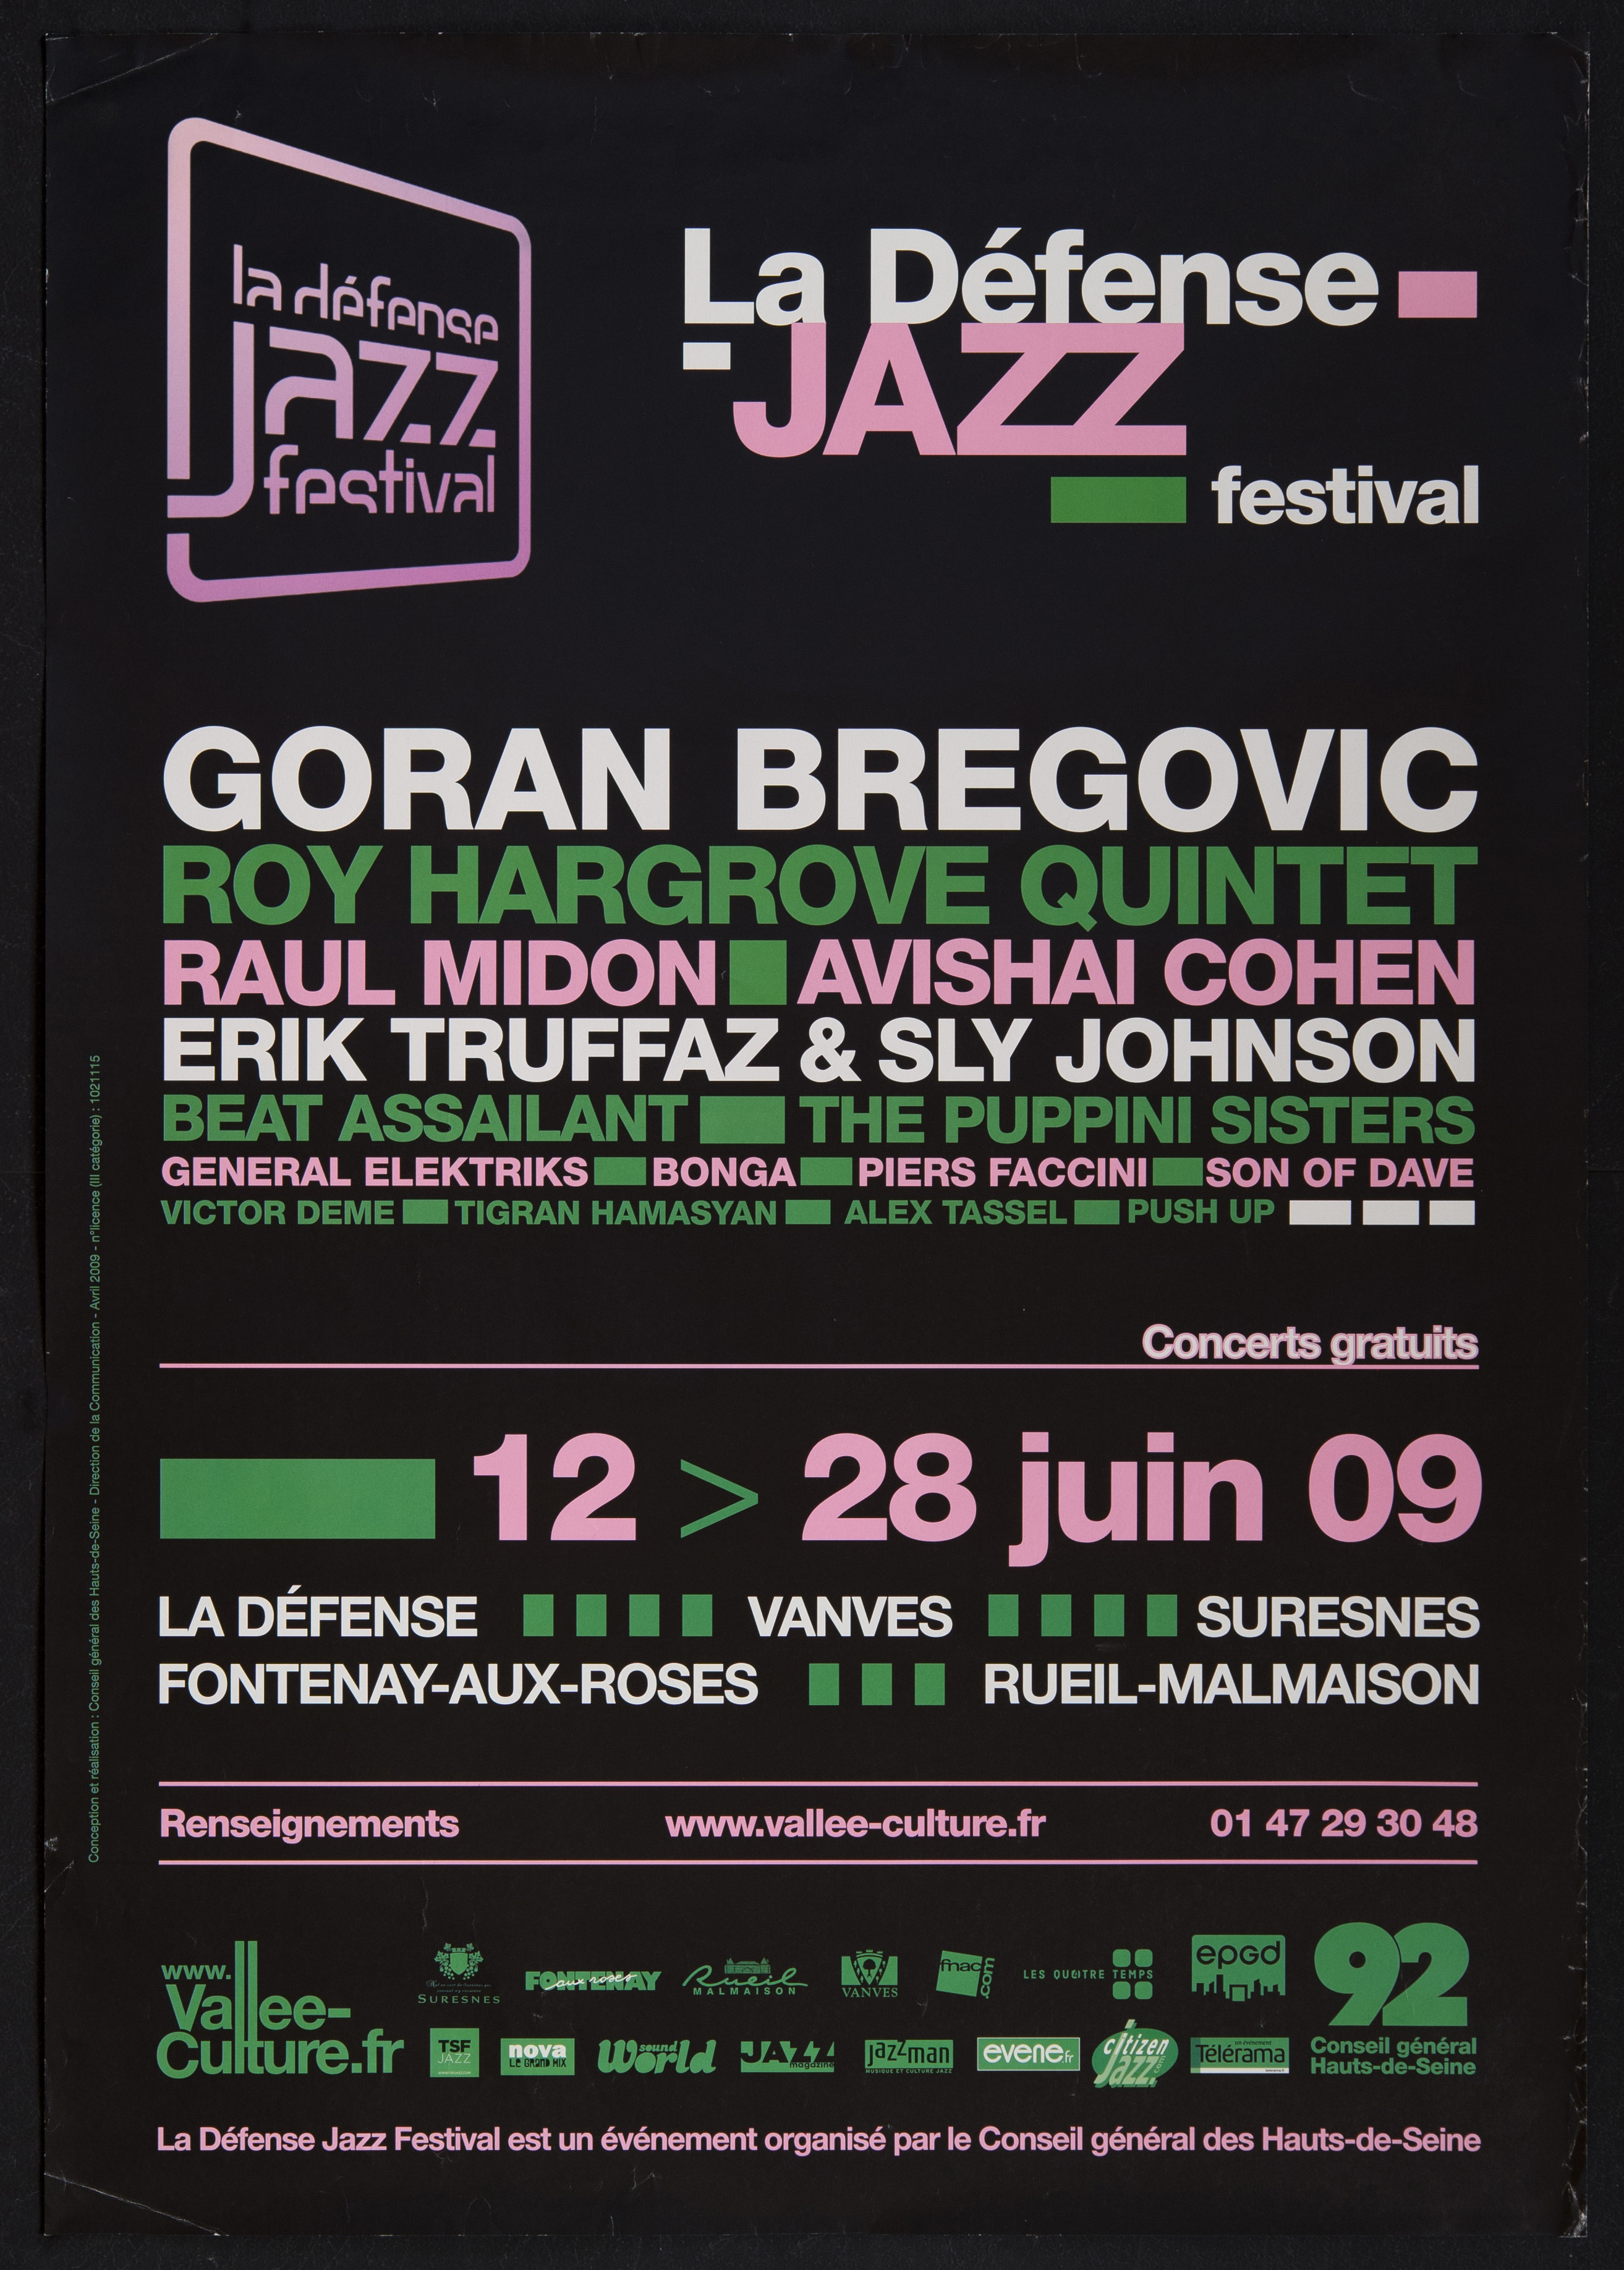 La Défense Jazz festival... 12-18 juin 09… - CG 92, 2009. - 1 affiche ill. coul., 100 x 70 cm.